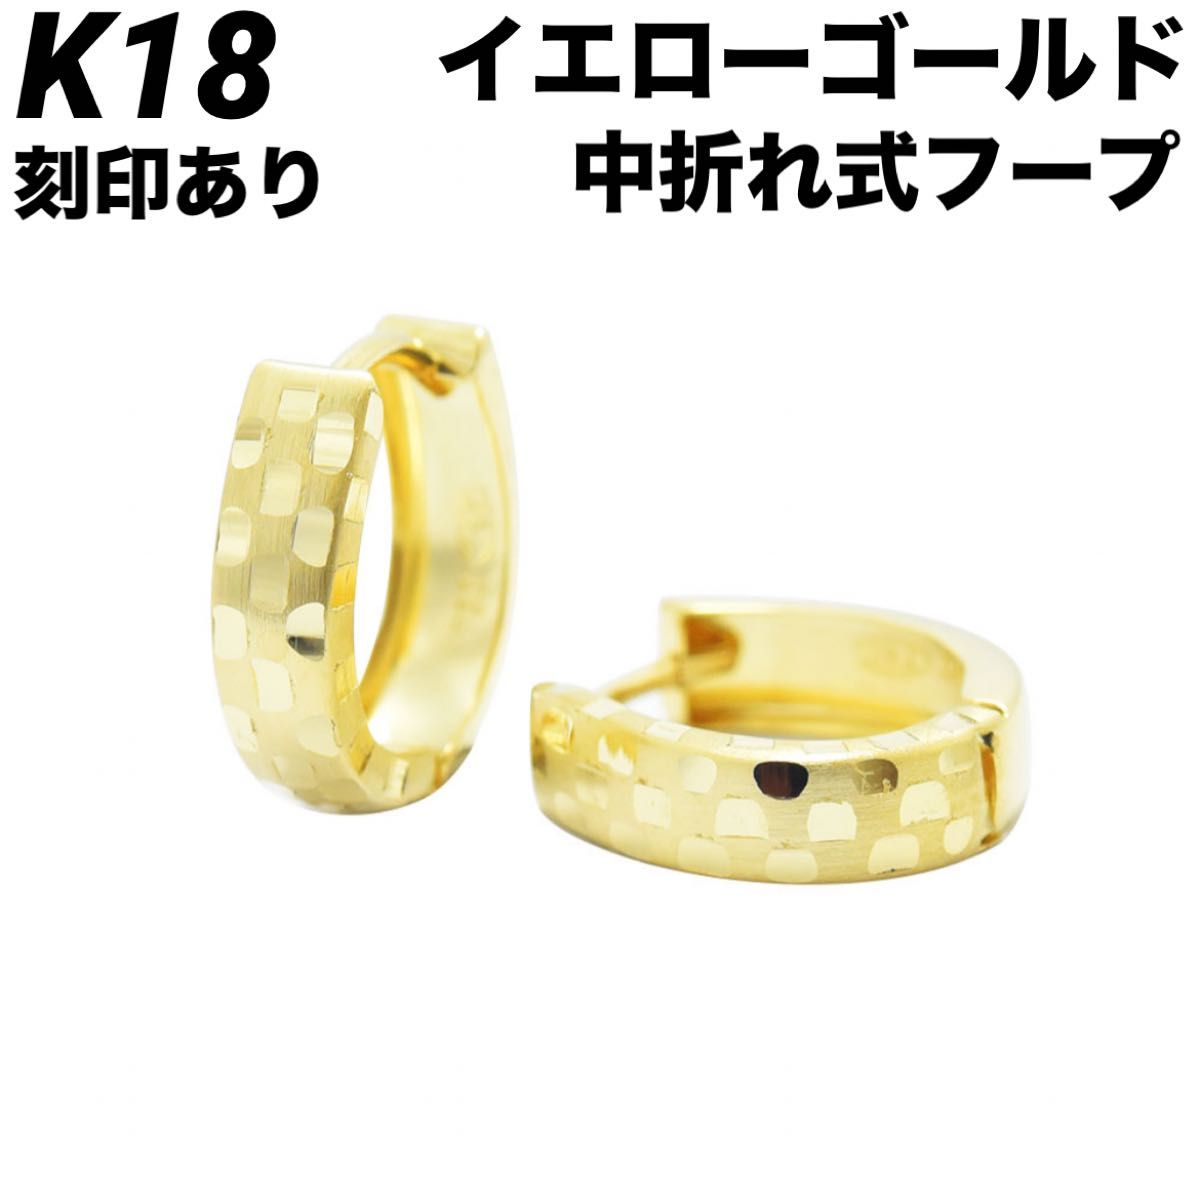 新品 K18 18金 18k ピアス  ゴールド 中折れ式 フープ 刻印あり 上質 日本製 ペア